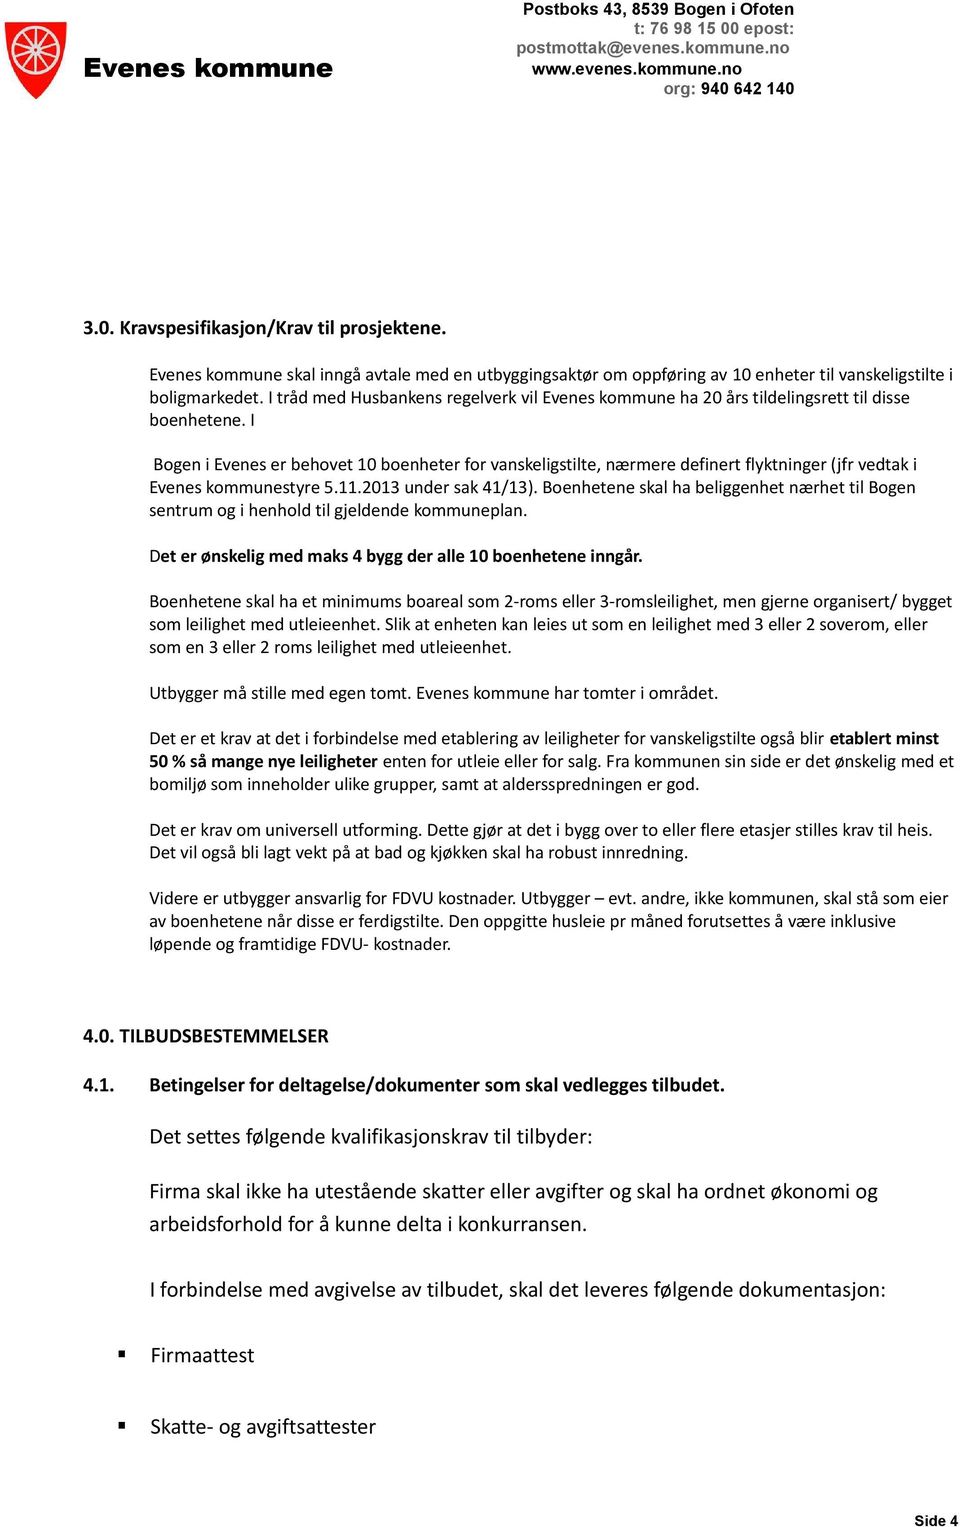 I Bogen i Evenes er behovet 10 boenheter for vanskeligstilte, nærmere definert flyktninger (jfr vedtak i Evenes kommunestyre 5.11.2013 under sak 41/13).